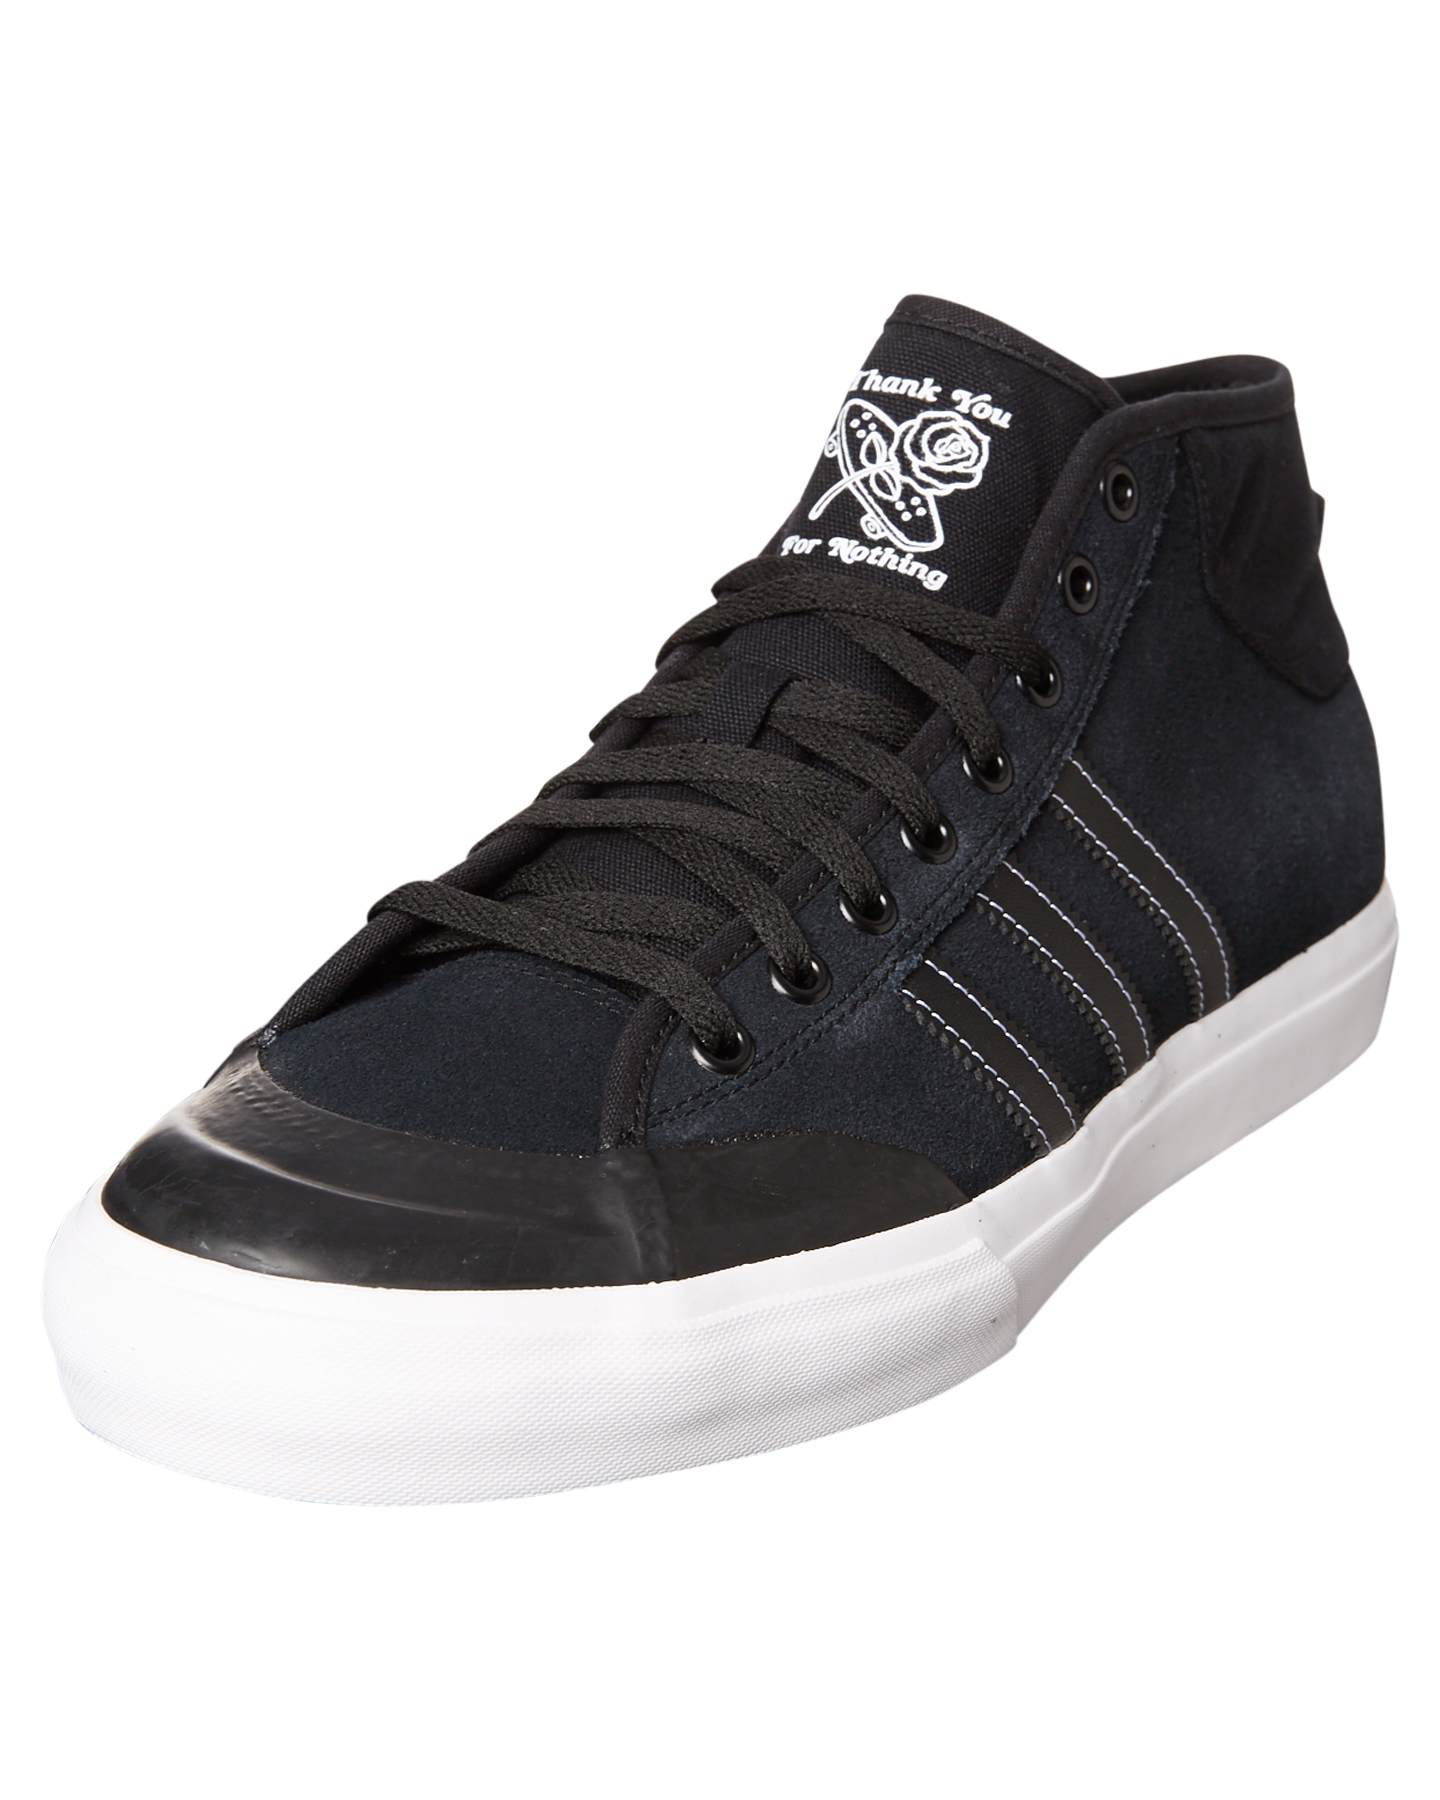 Adidas Originals Matchcourt Mid Suede Shoe - Black Black White | SurfStitch